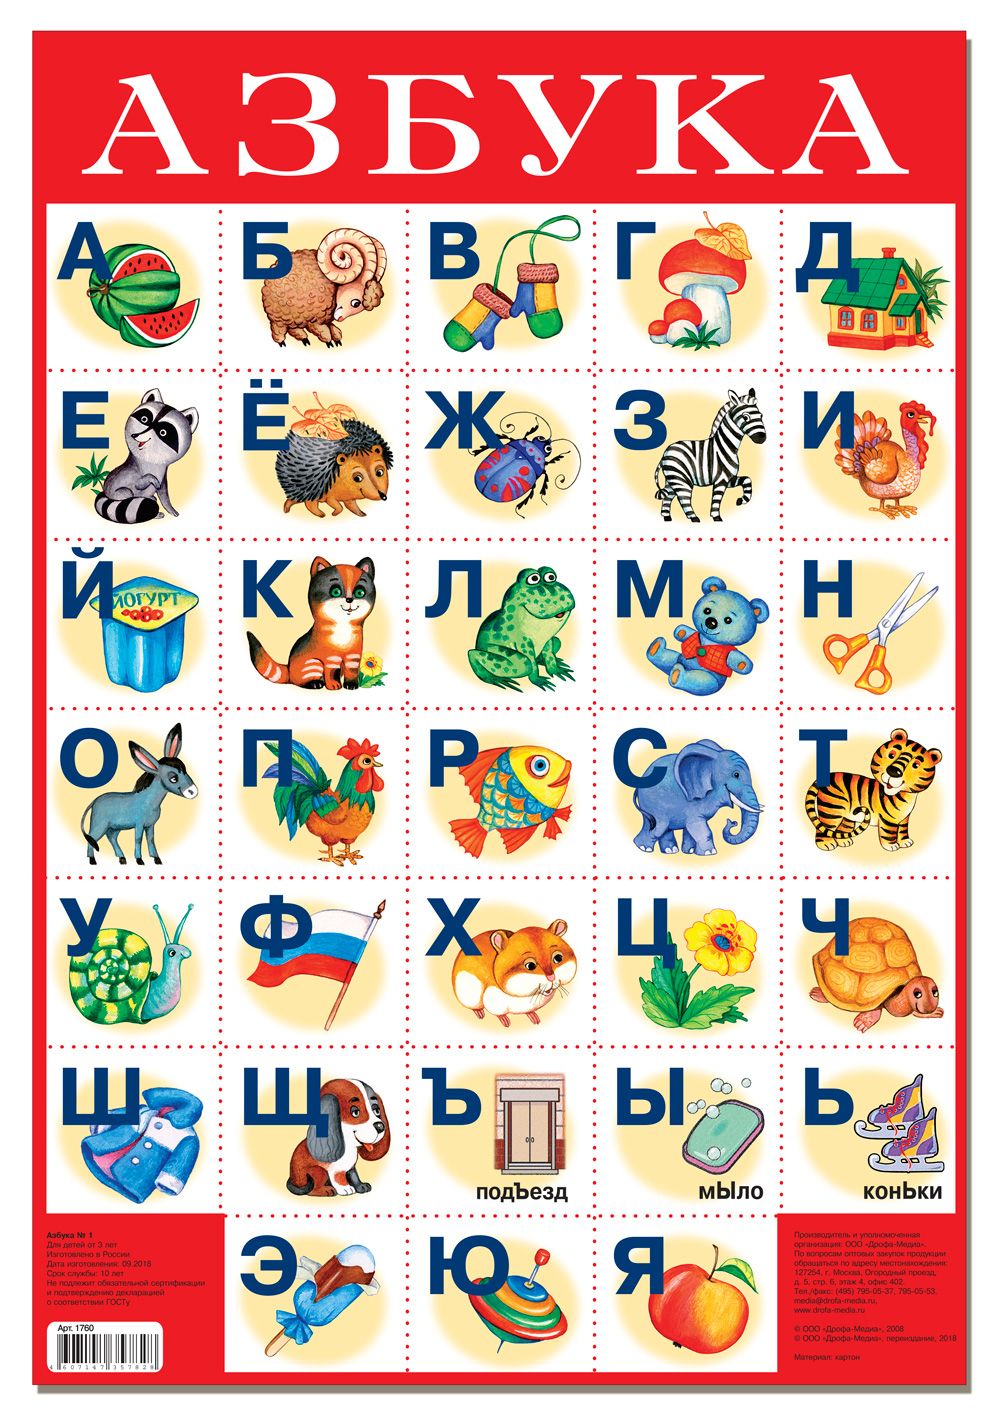 Распечатать алфавит русский с картинками: Русский алфавит с картинками - скачать и распечатать бесплатно